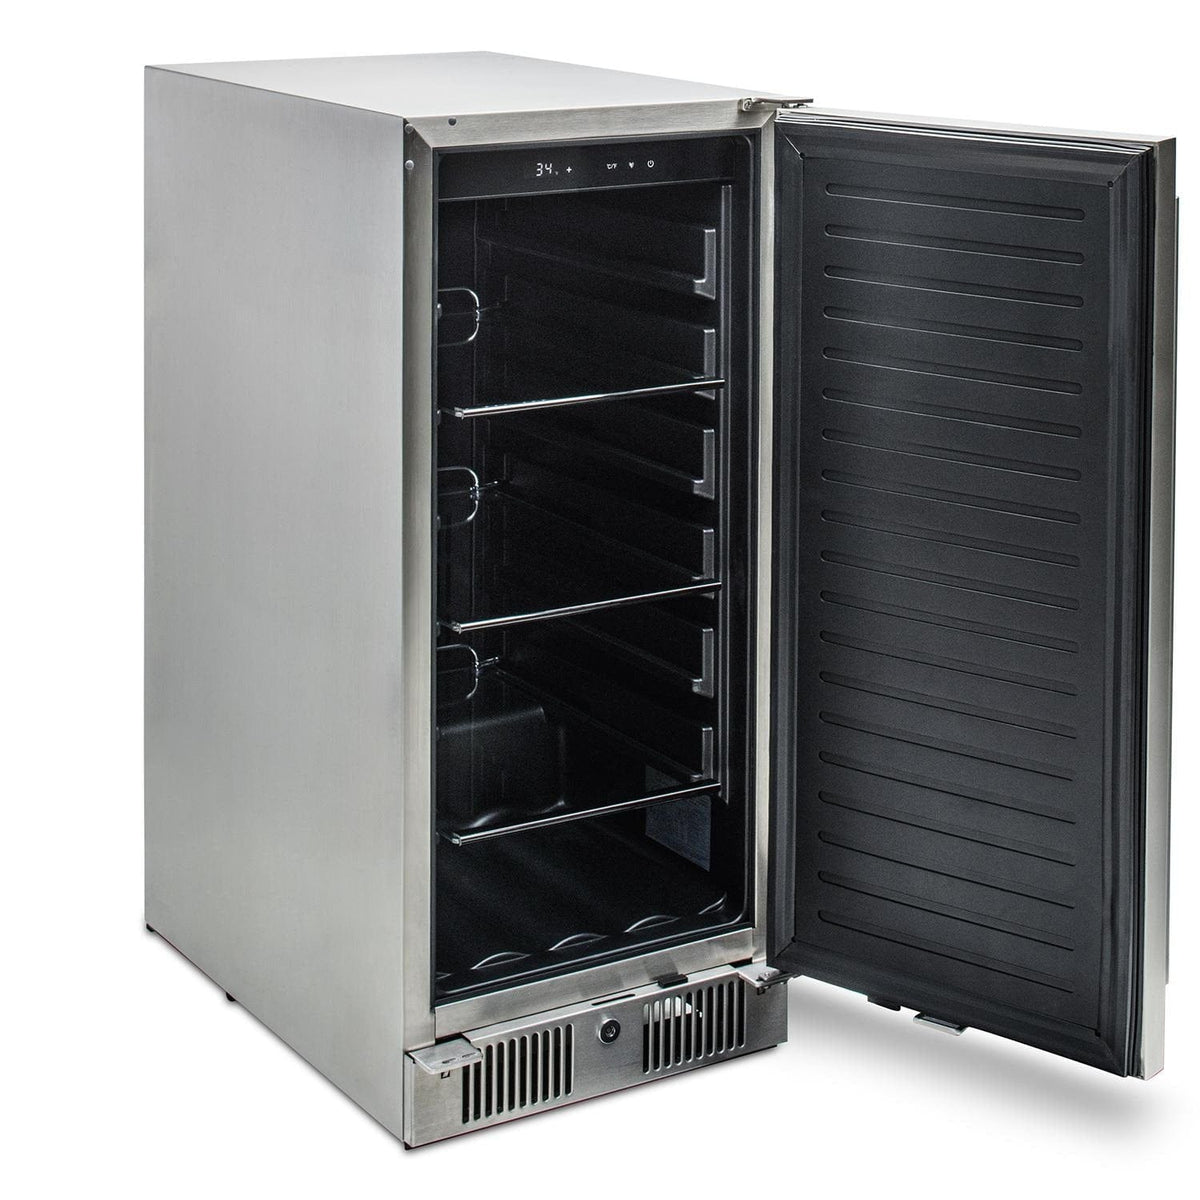 Blaze 15 Inch Outdoor Refrigerator Left Angle View With Door Open